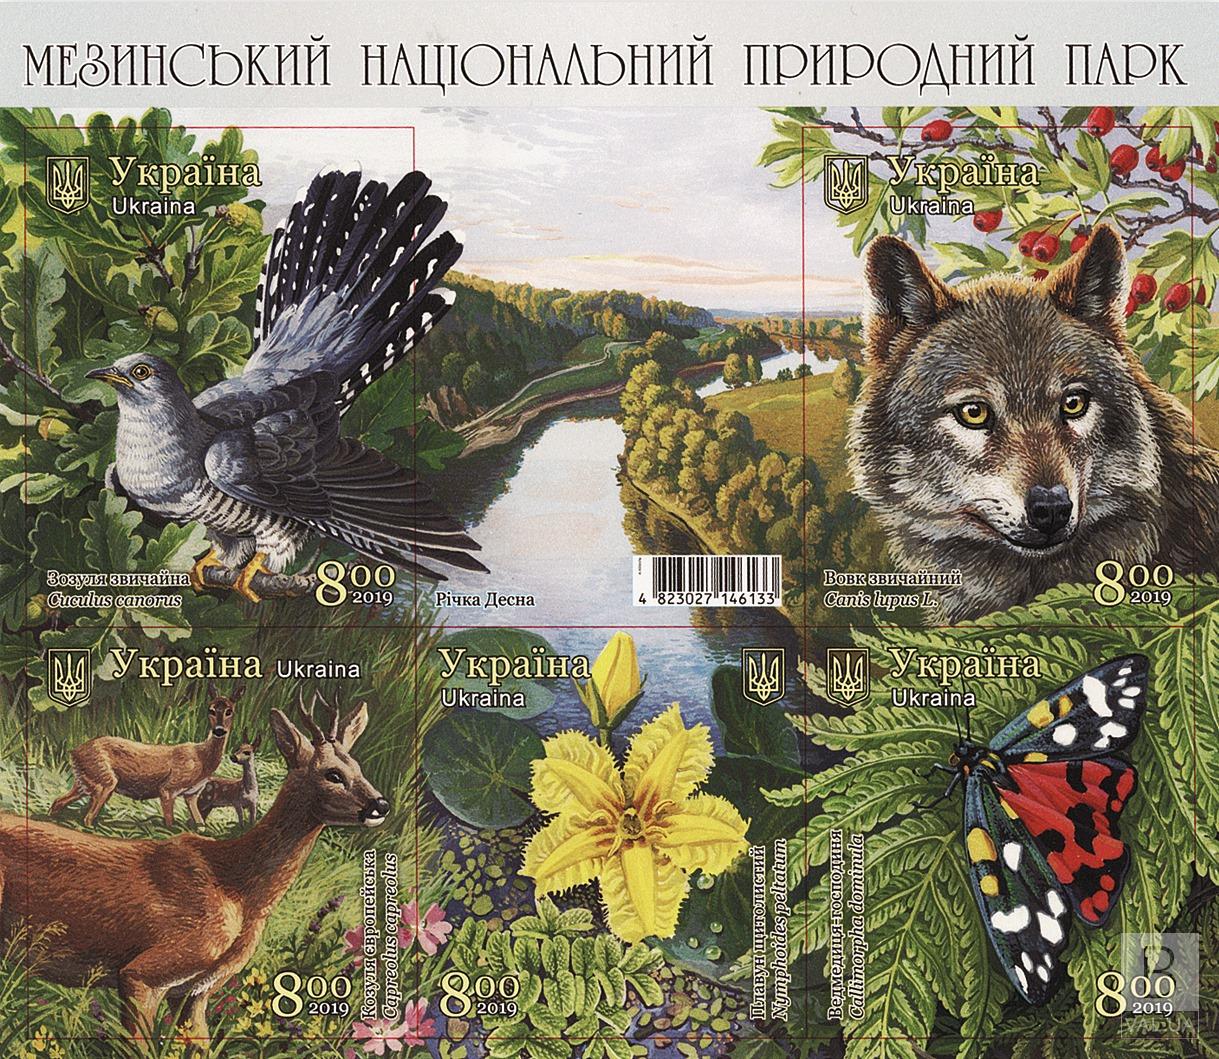 Появились почтовые марки с «Мезинським национальным природным парком»